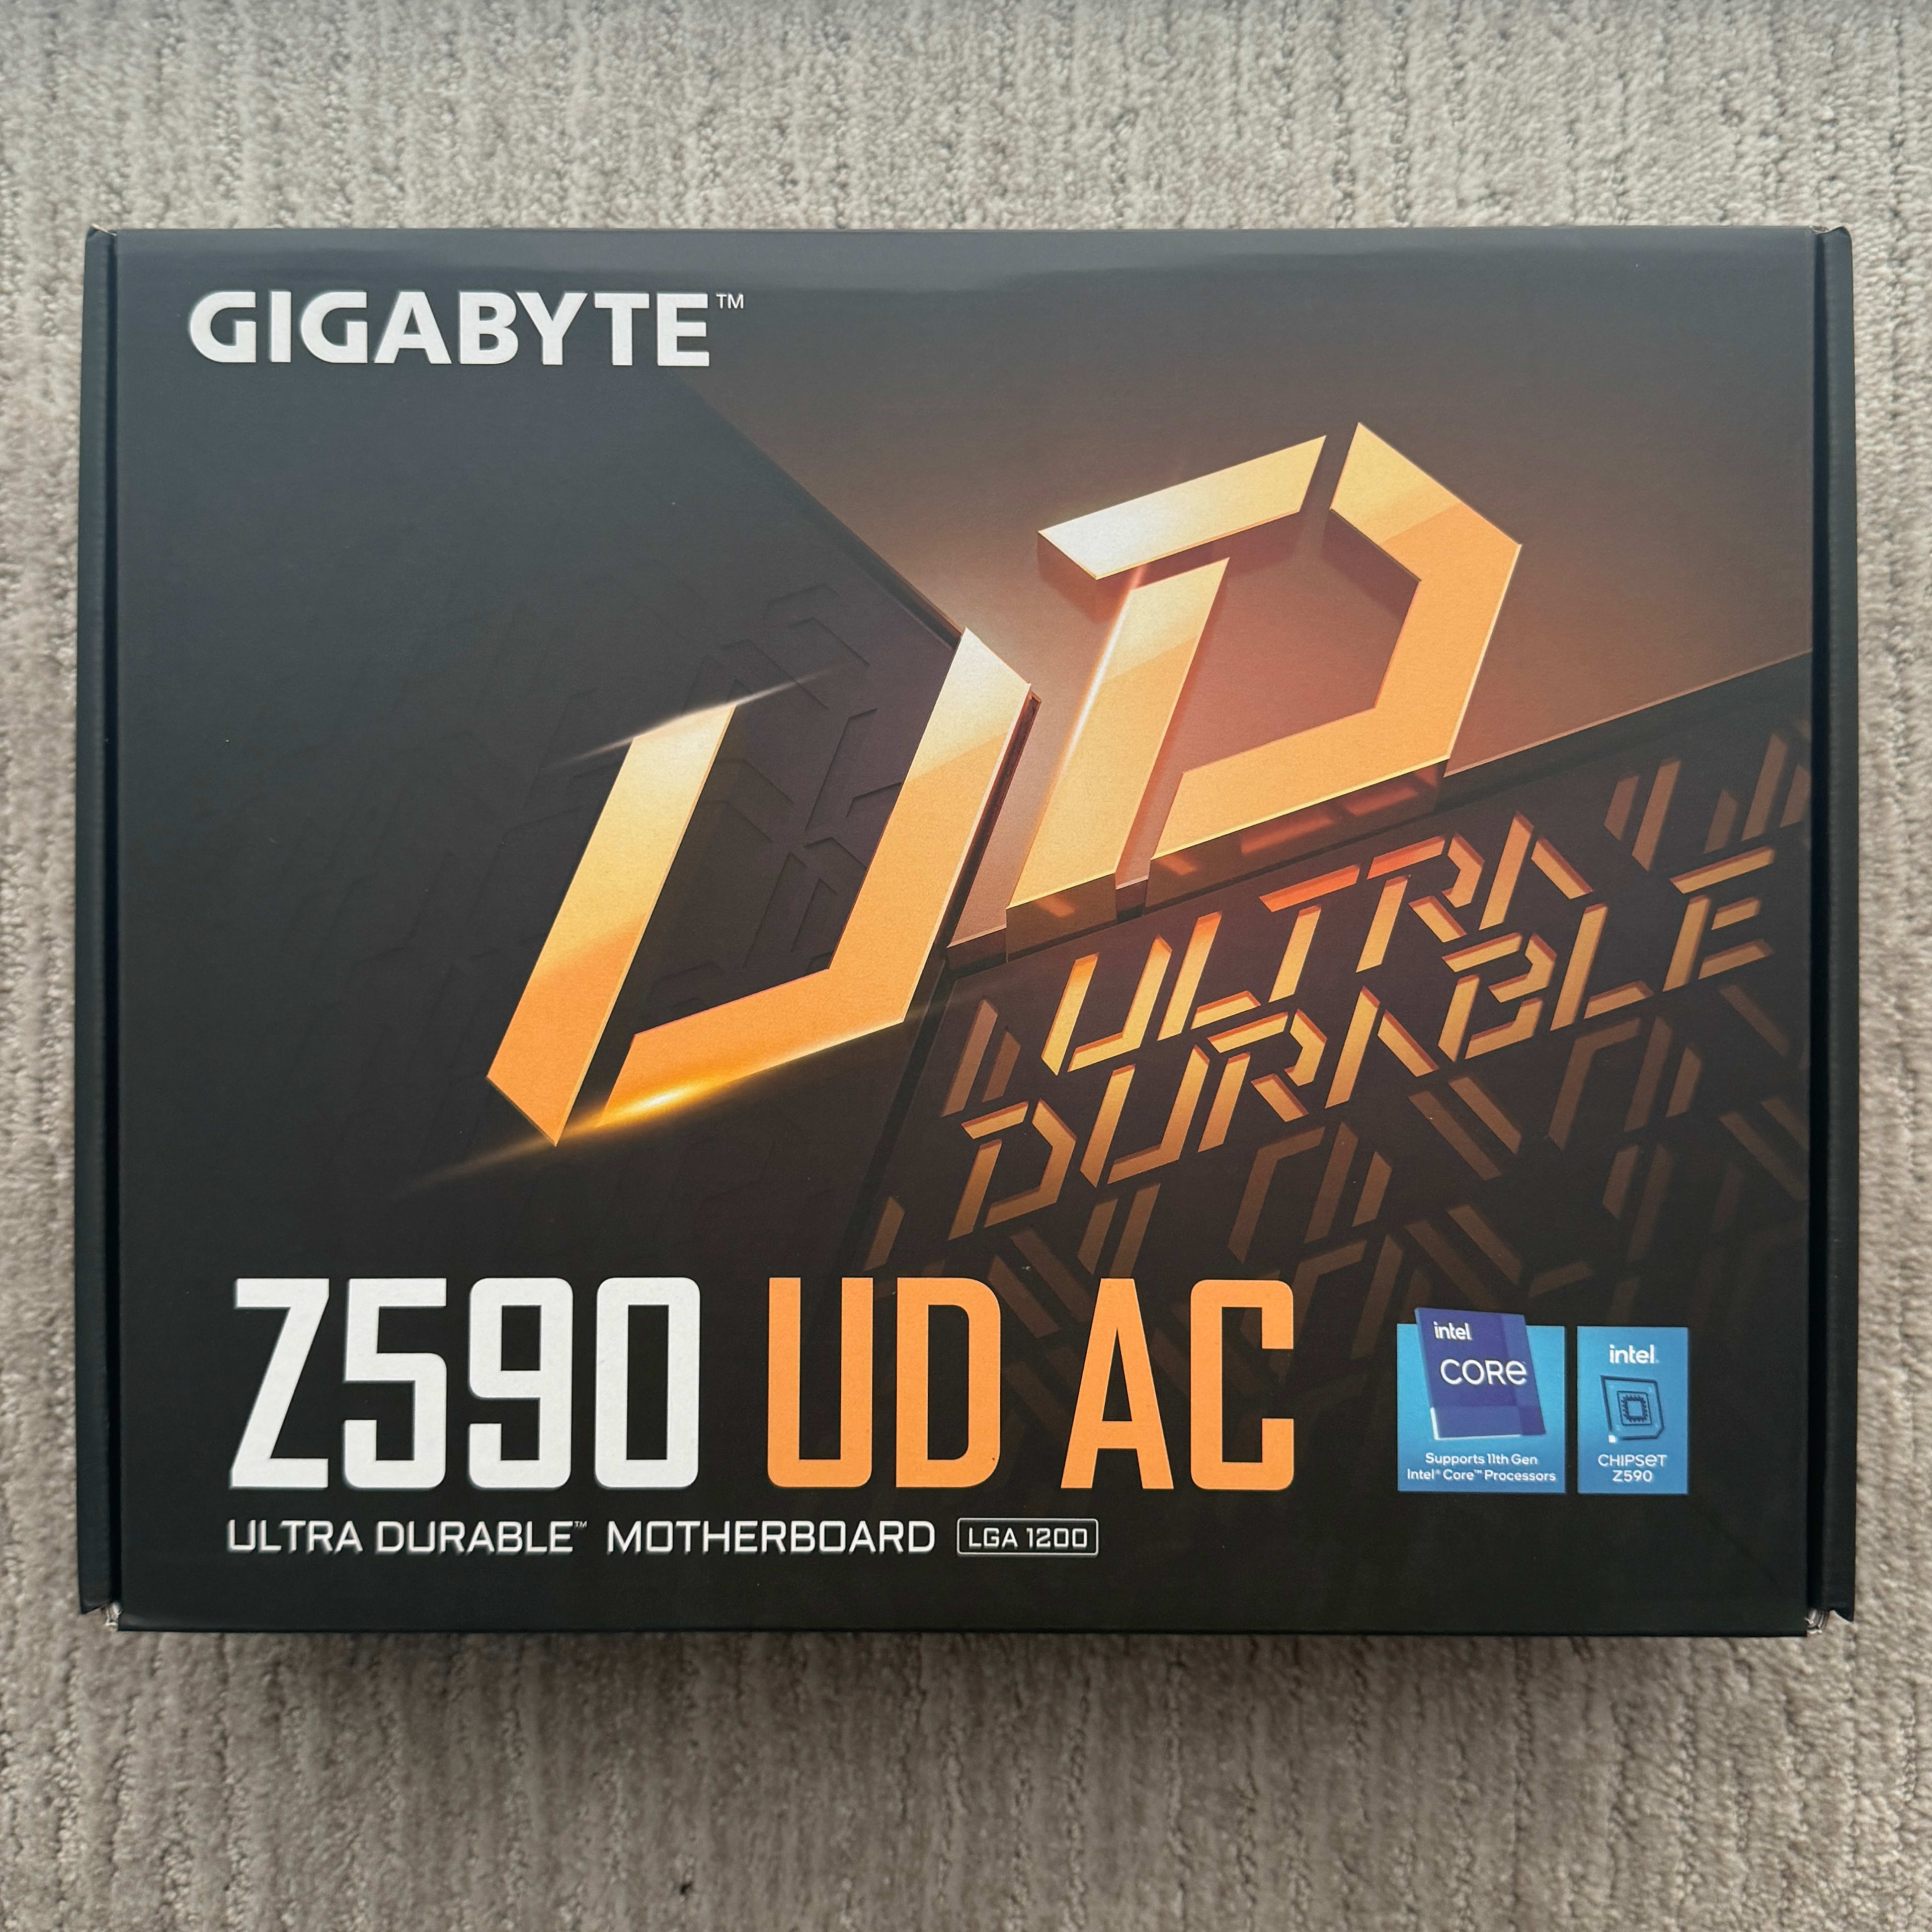 [5] Z590 UD AC LGA1200 Gigabyte Motherboards